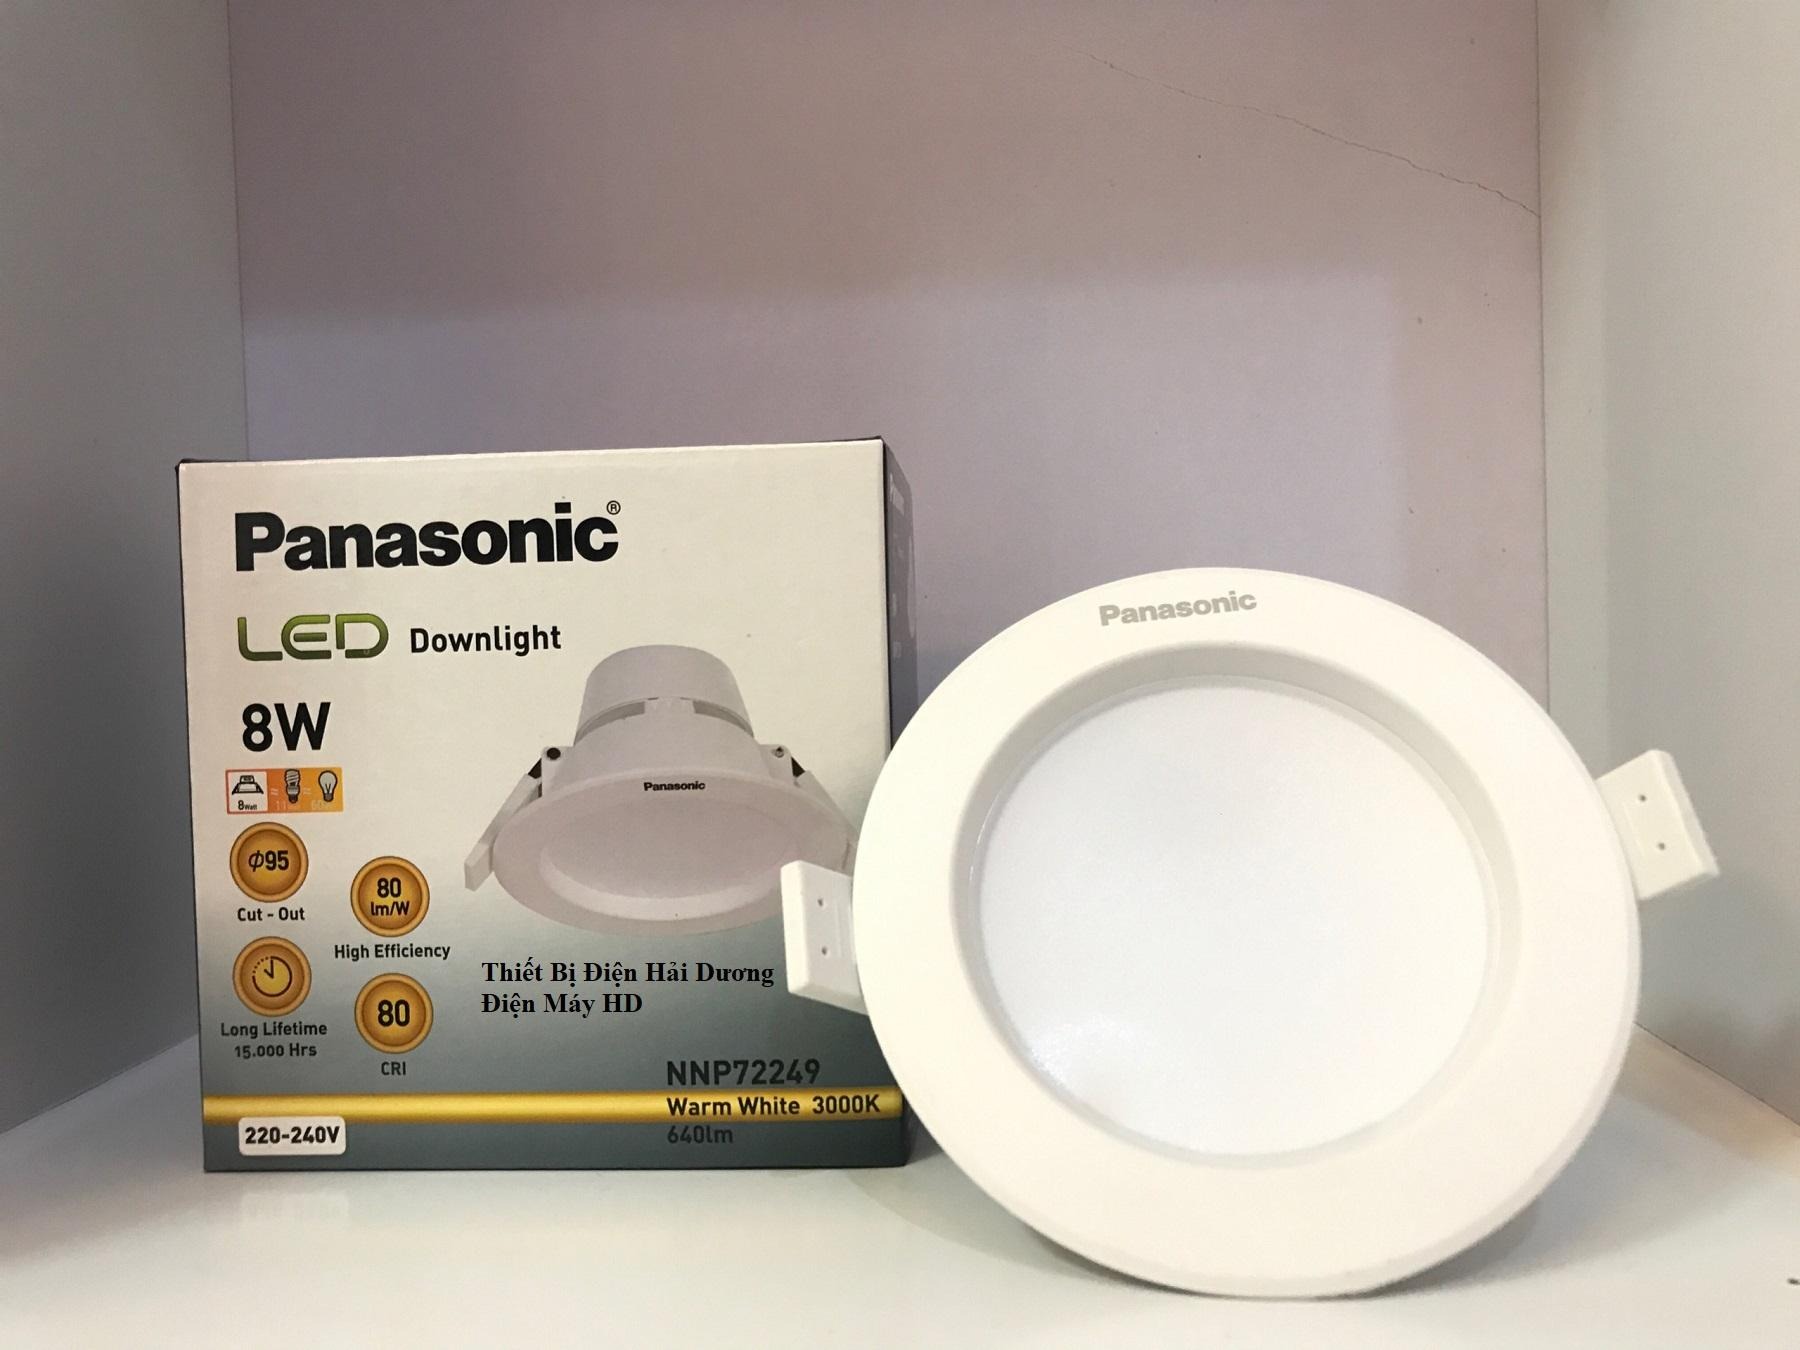 Đèn Panasonic LED Downlight âm trần NNP72249-59 8W (Trắng-Vàng)